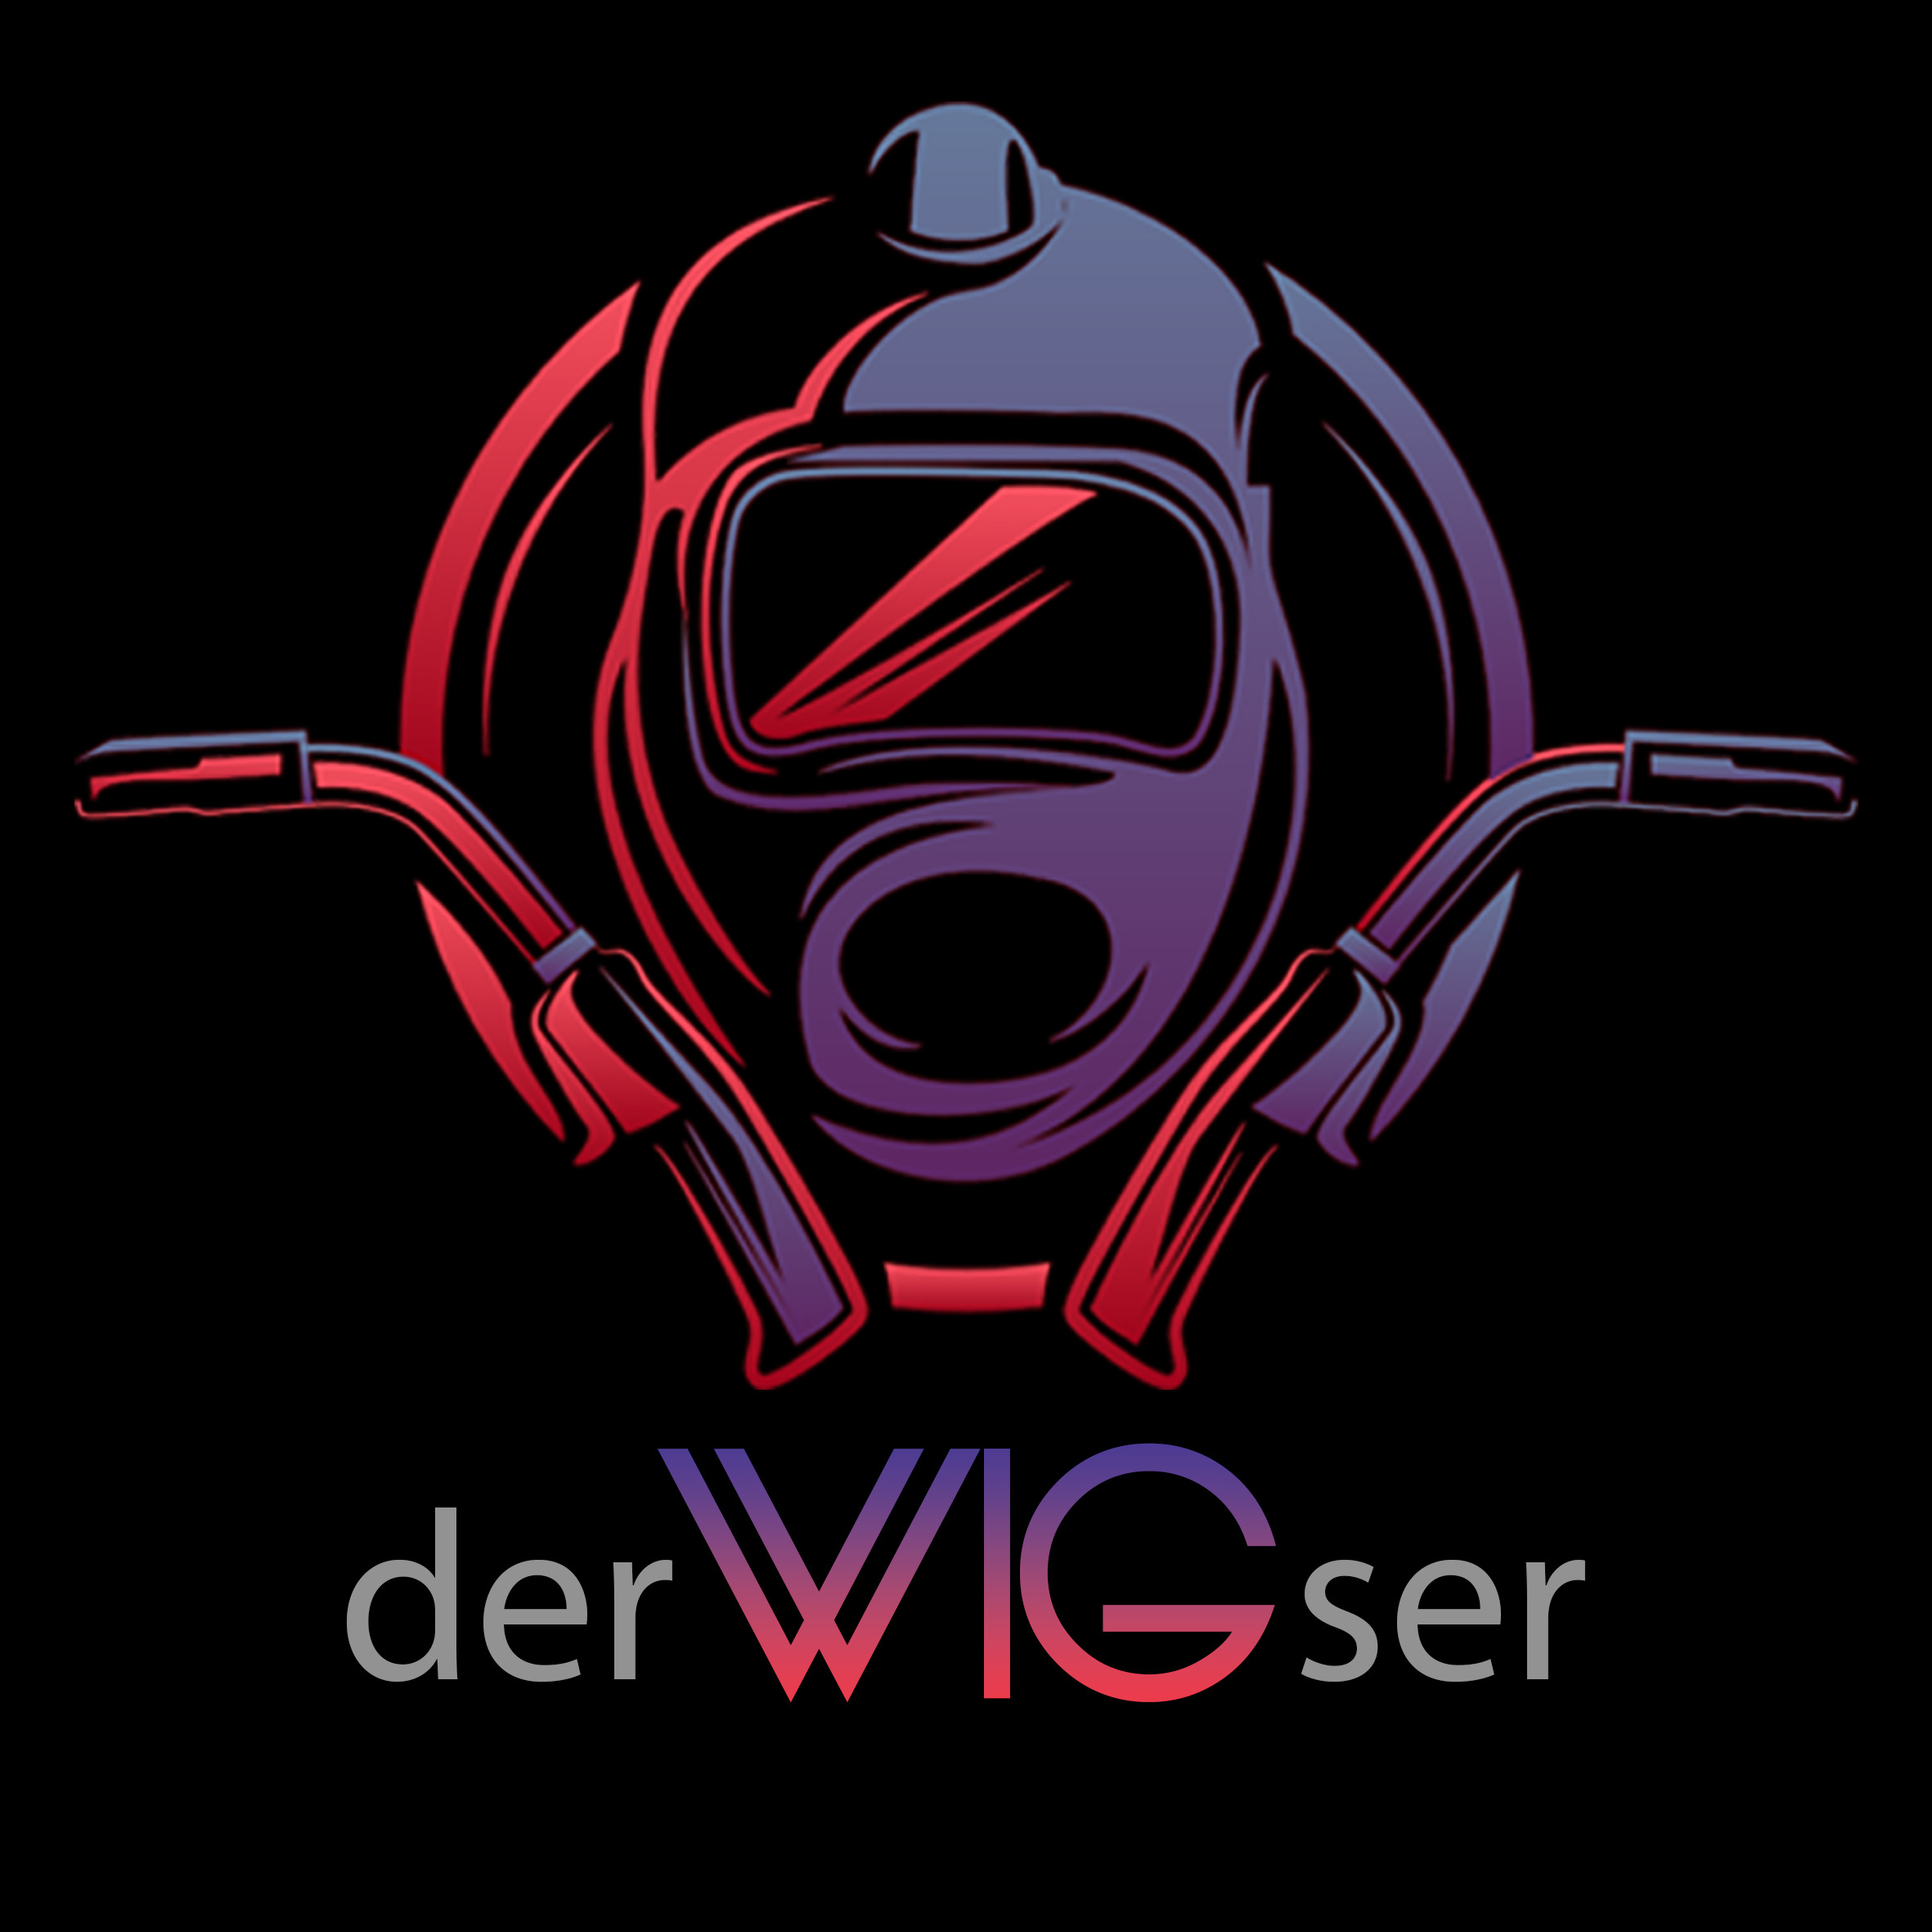 derWIGser Logo